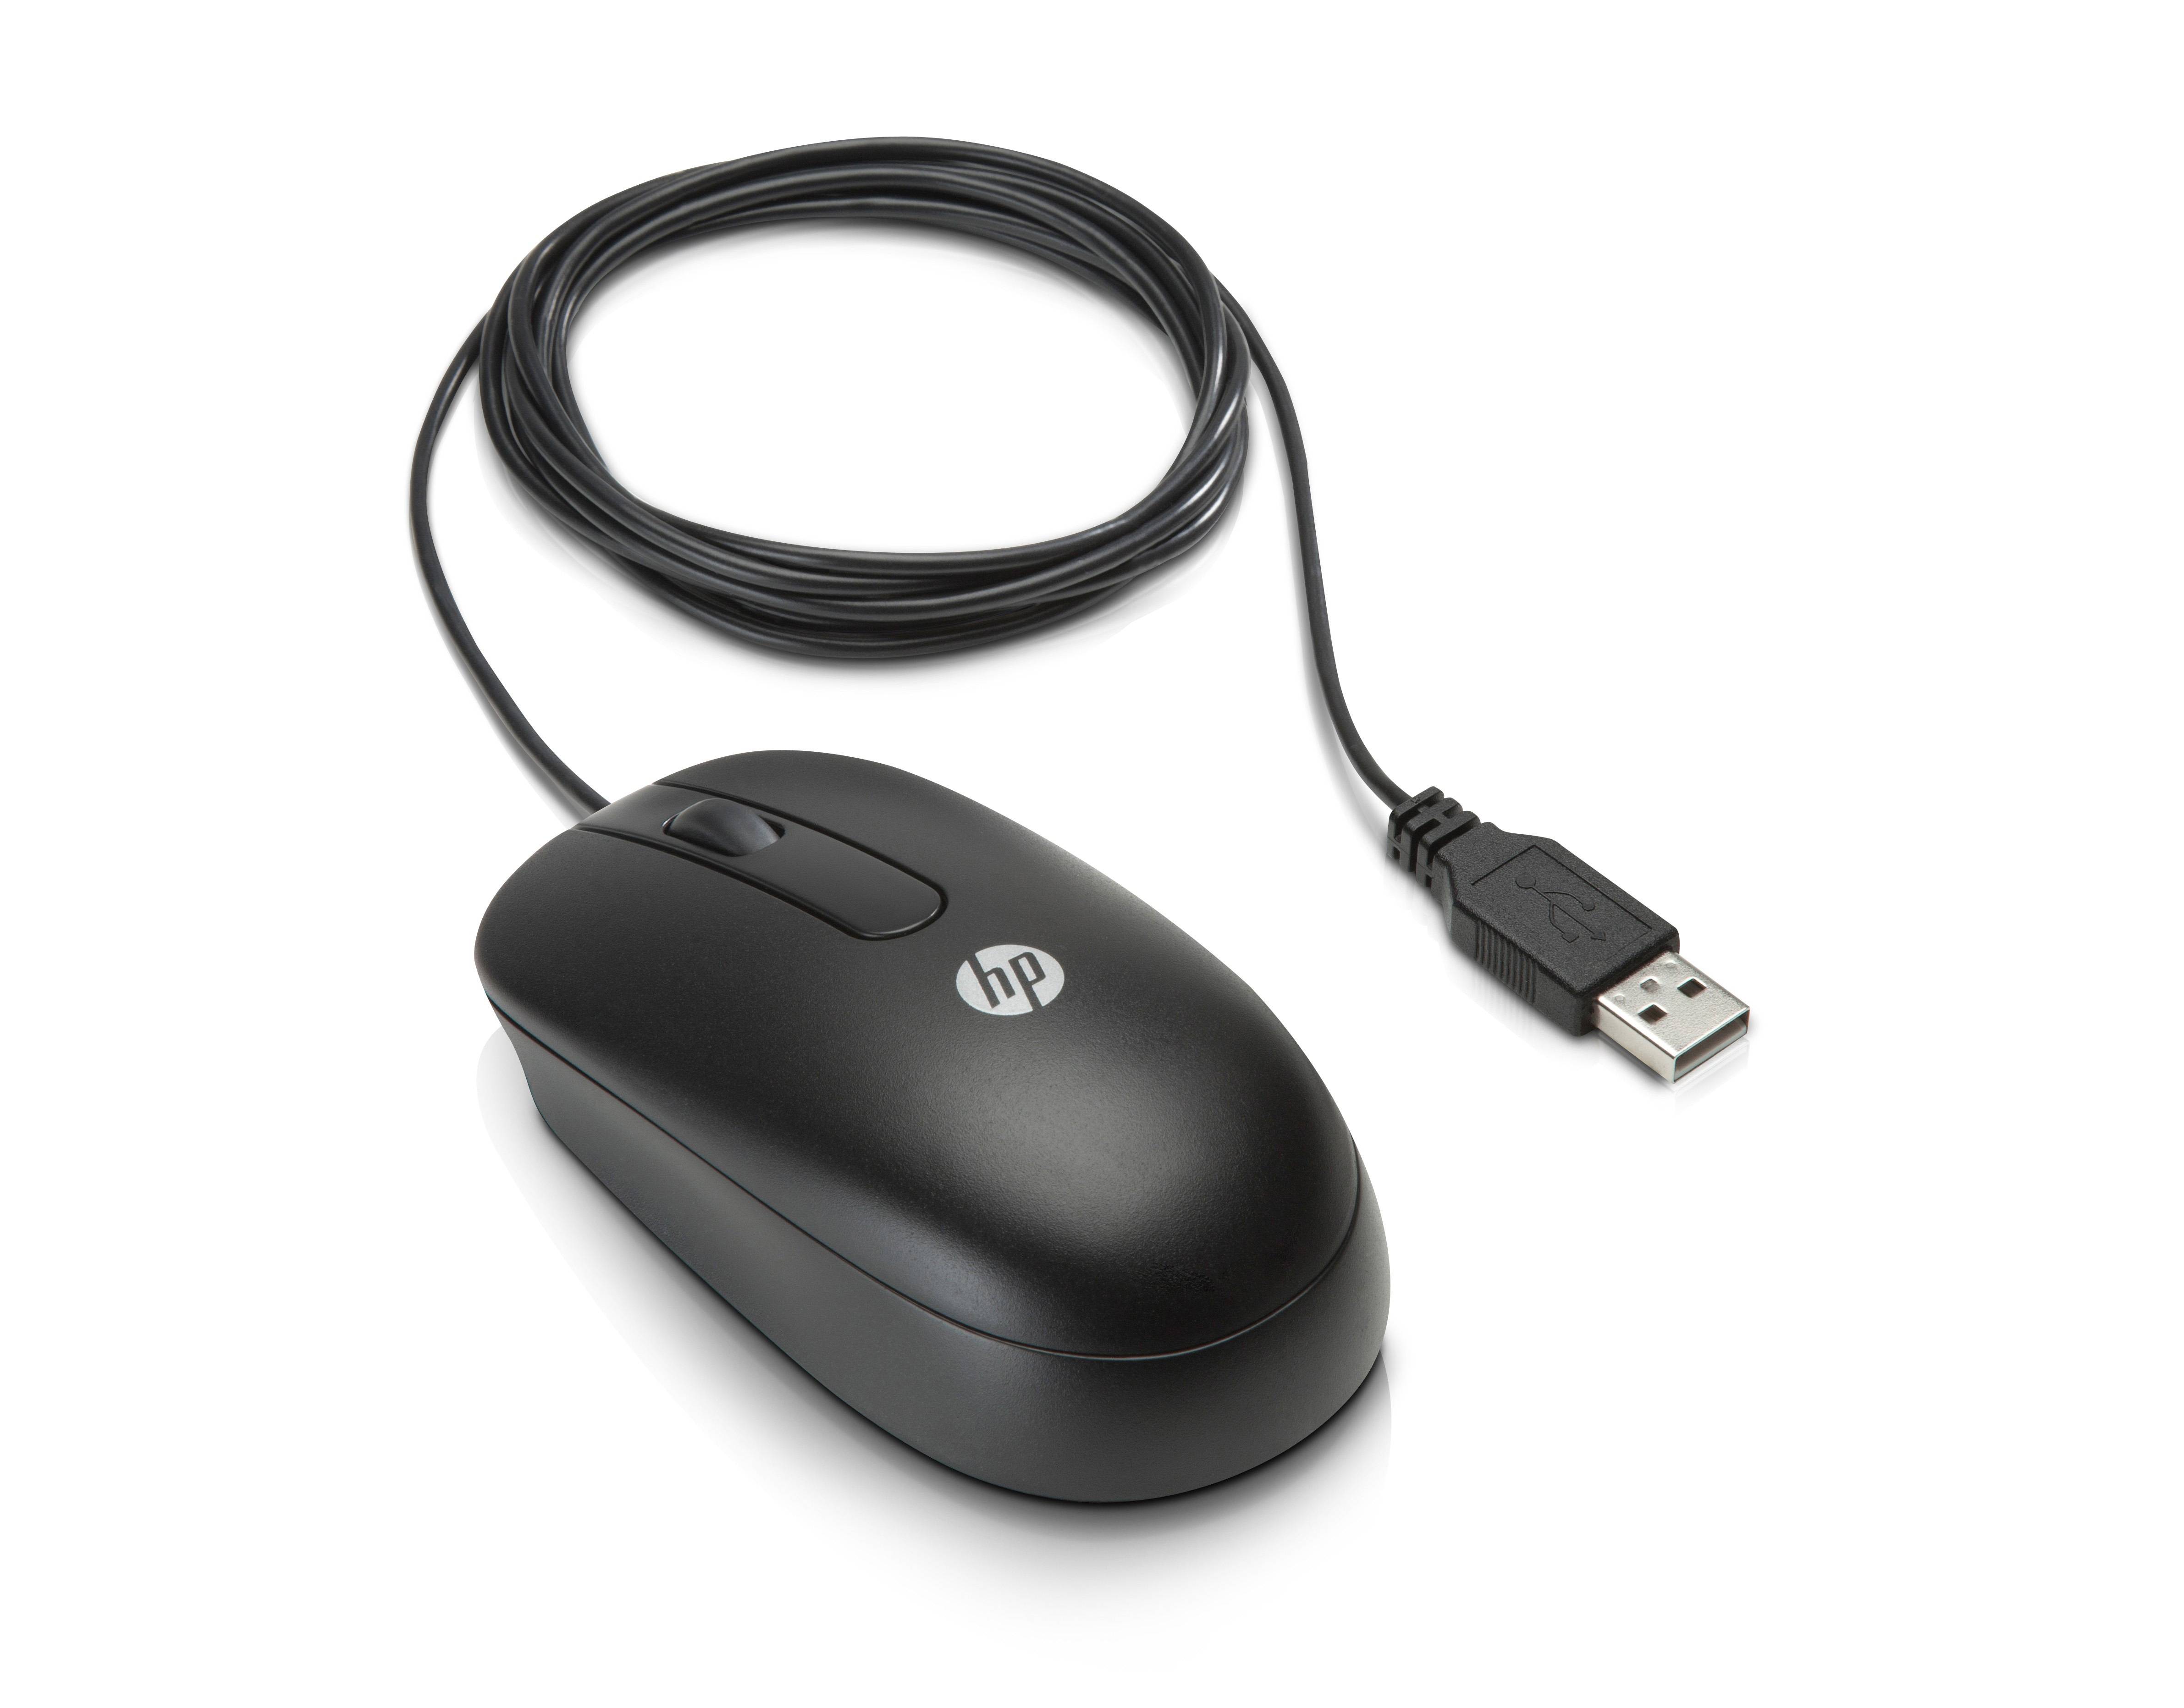 Rca Informatique - Image du produit : 3-BUTTON USB LASER MOUSE IN